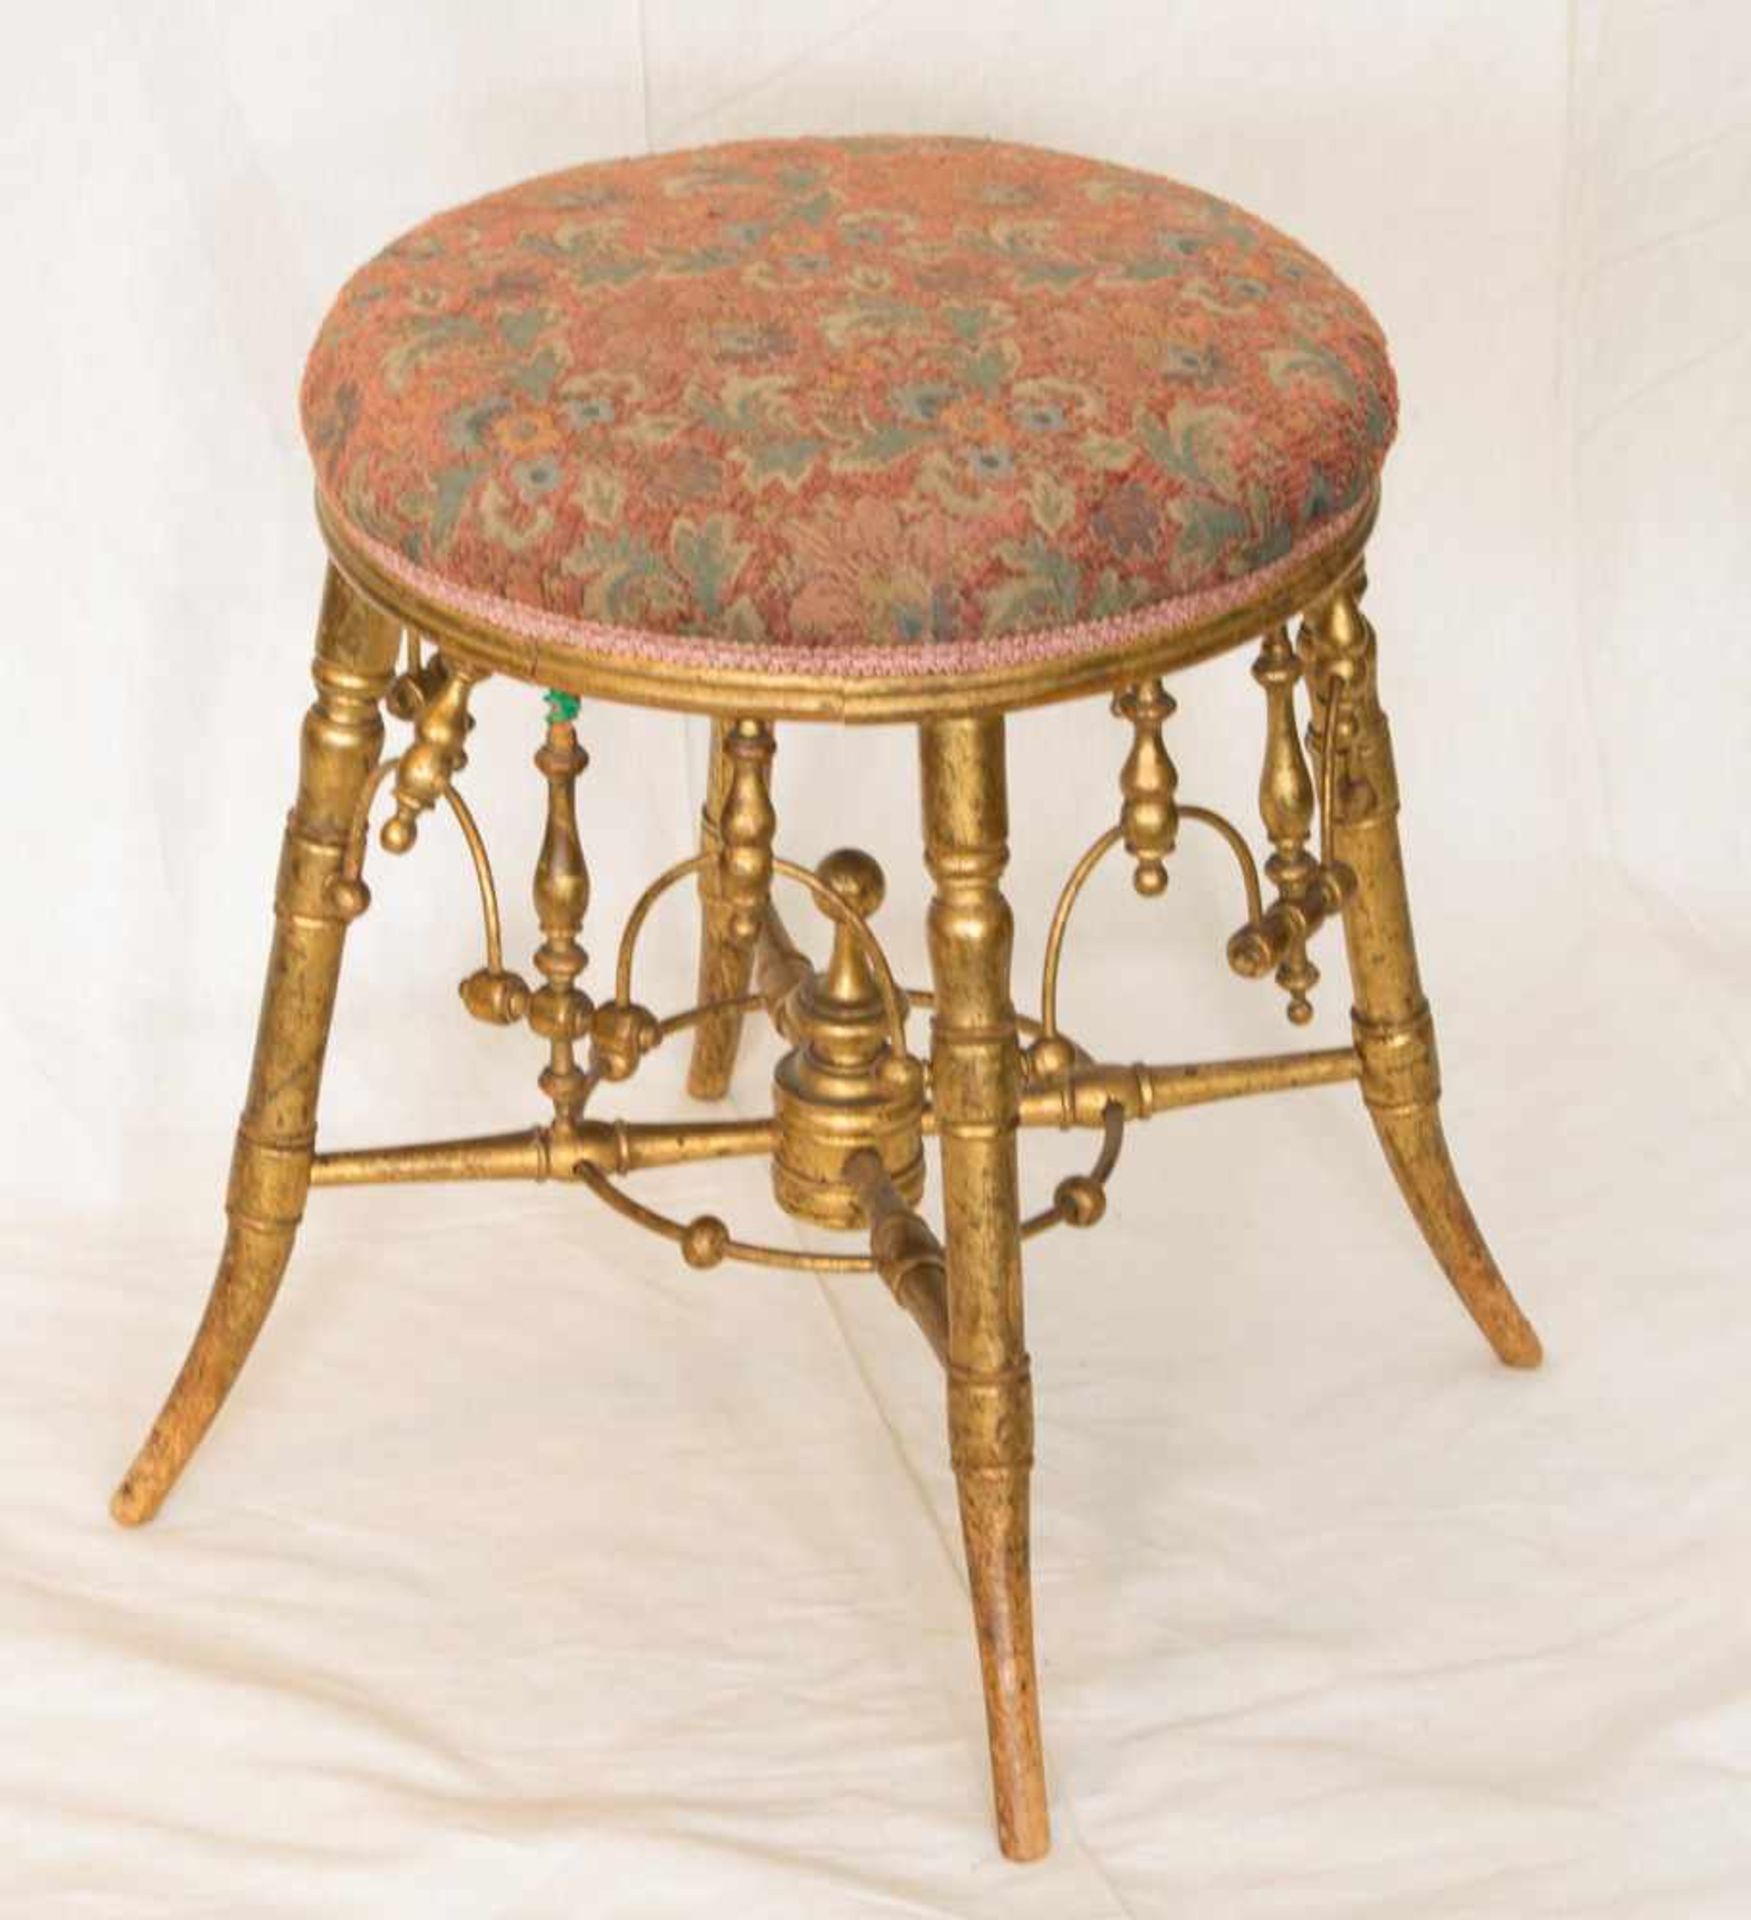 Sitzhockerum 1880, viele gedrechselte Teile, Holz, goldfarben gefasst, gepolstert, H. 49 cm